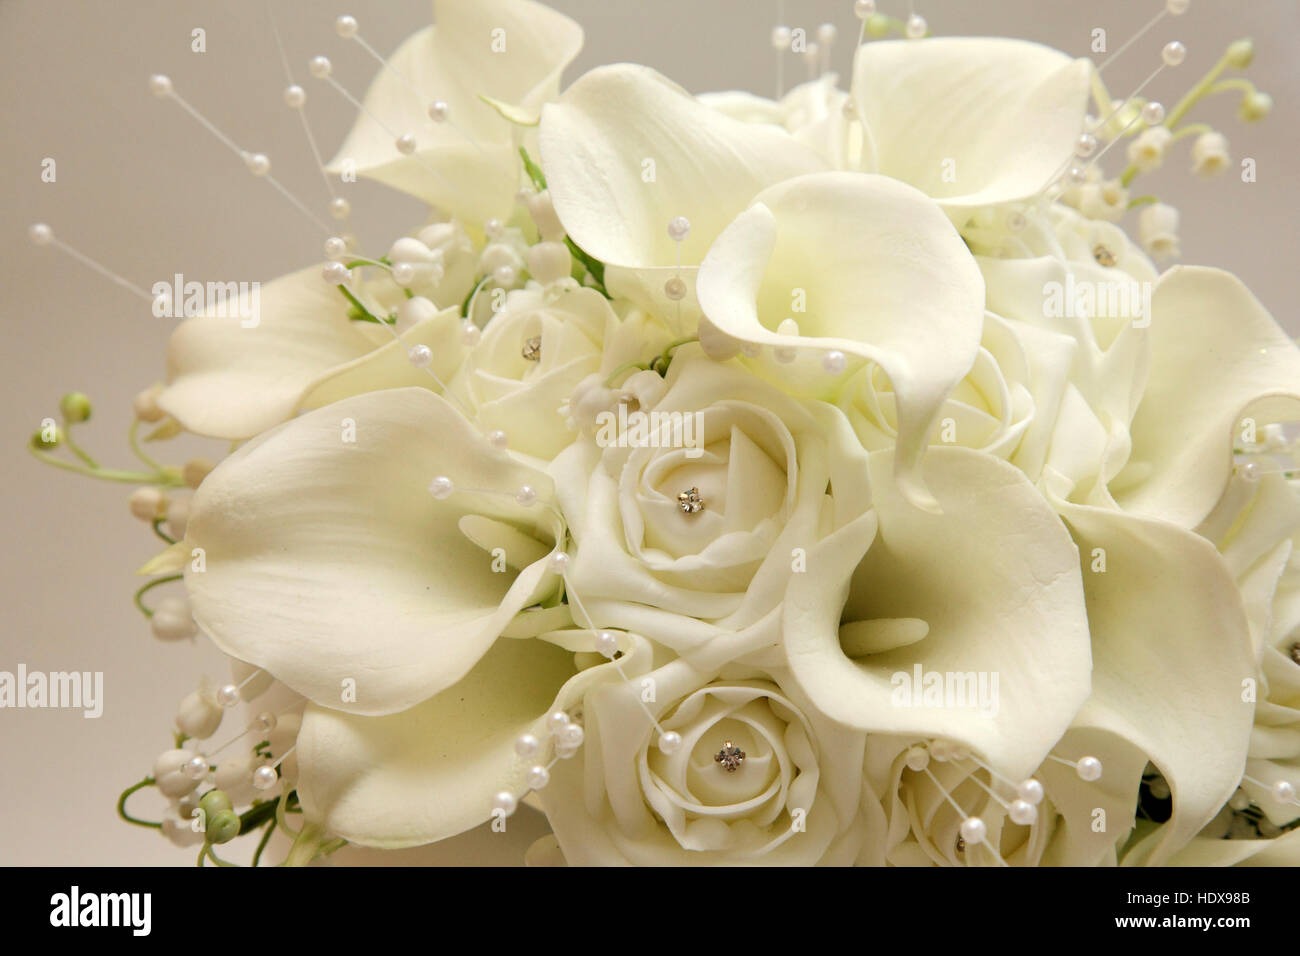 Bouquet de mariée fait à partir de roses, des lis, et lis de la vallée, dans des tons blancs et crème. Banque D'Images